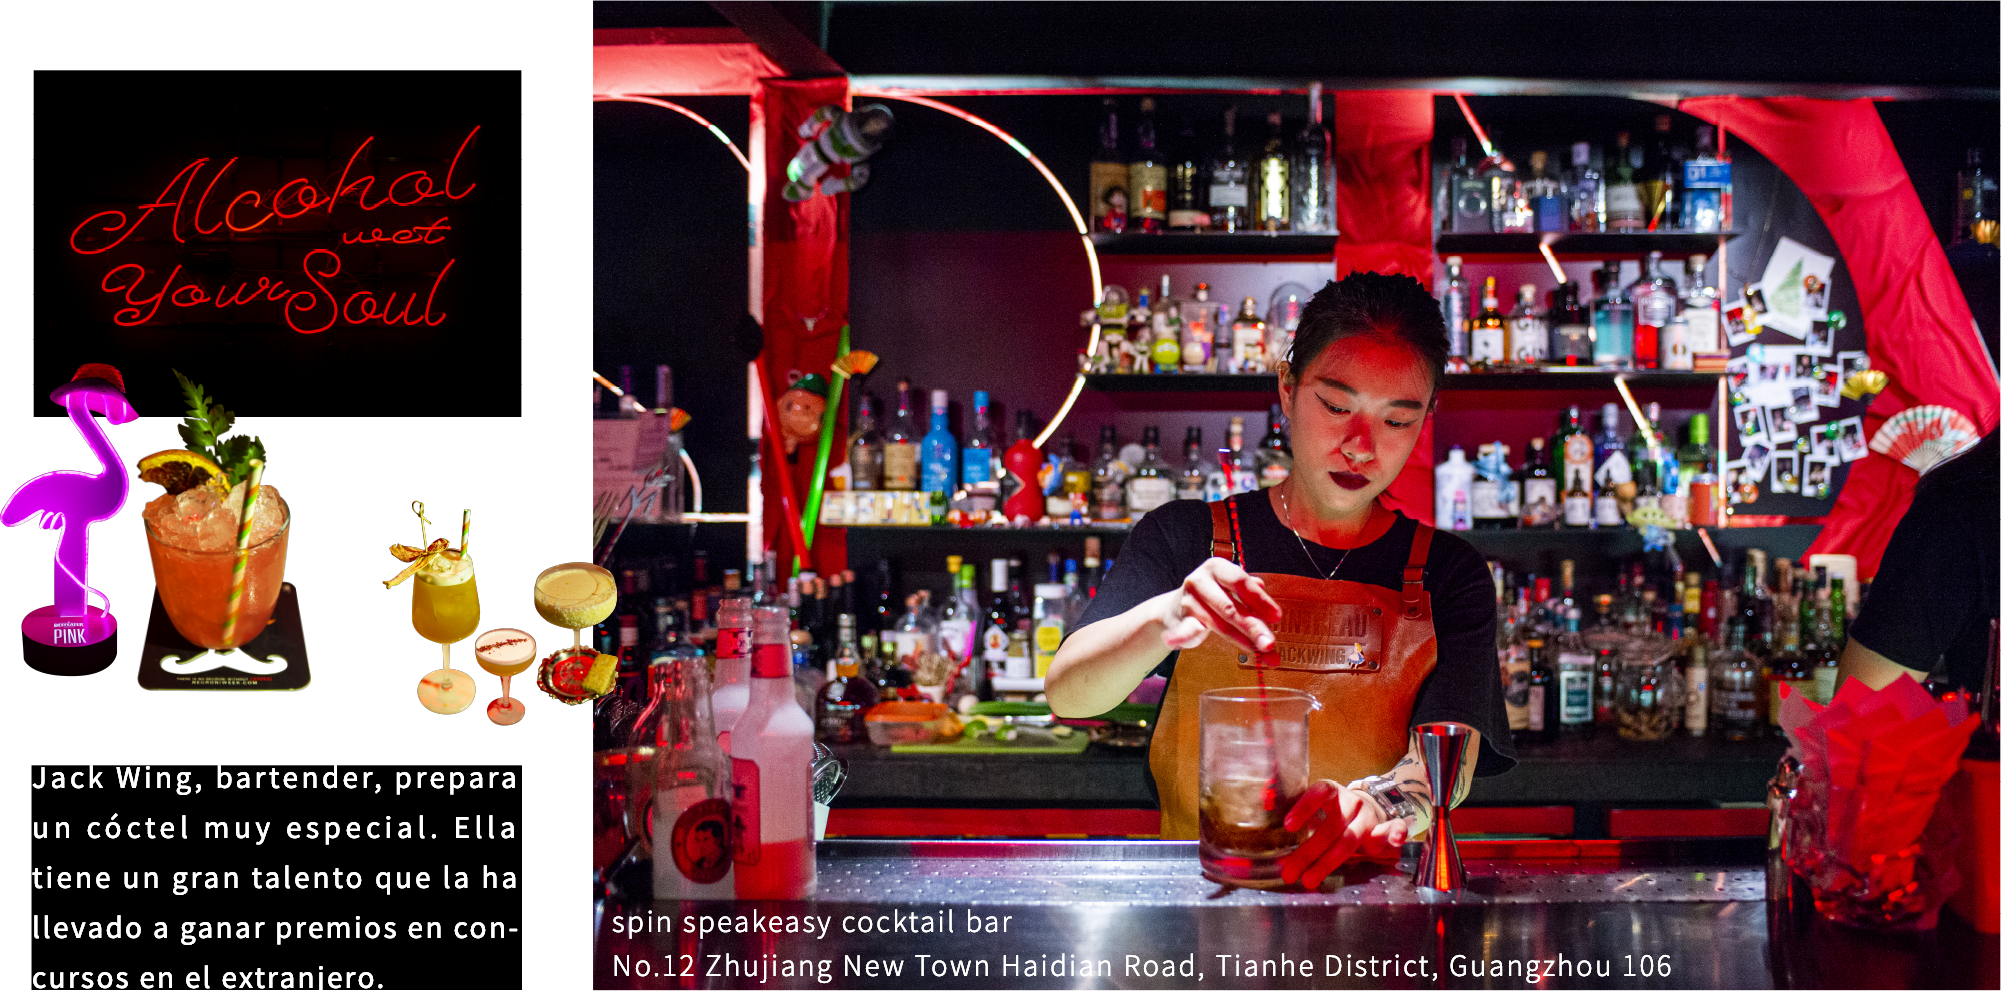 Jack Wing, bartender, prepara un cóctel muy especial. Ella tiene un gran talento que la ha llevado a ganar premios en concursos en el extranjero.